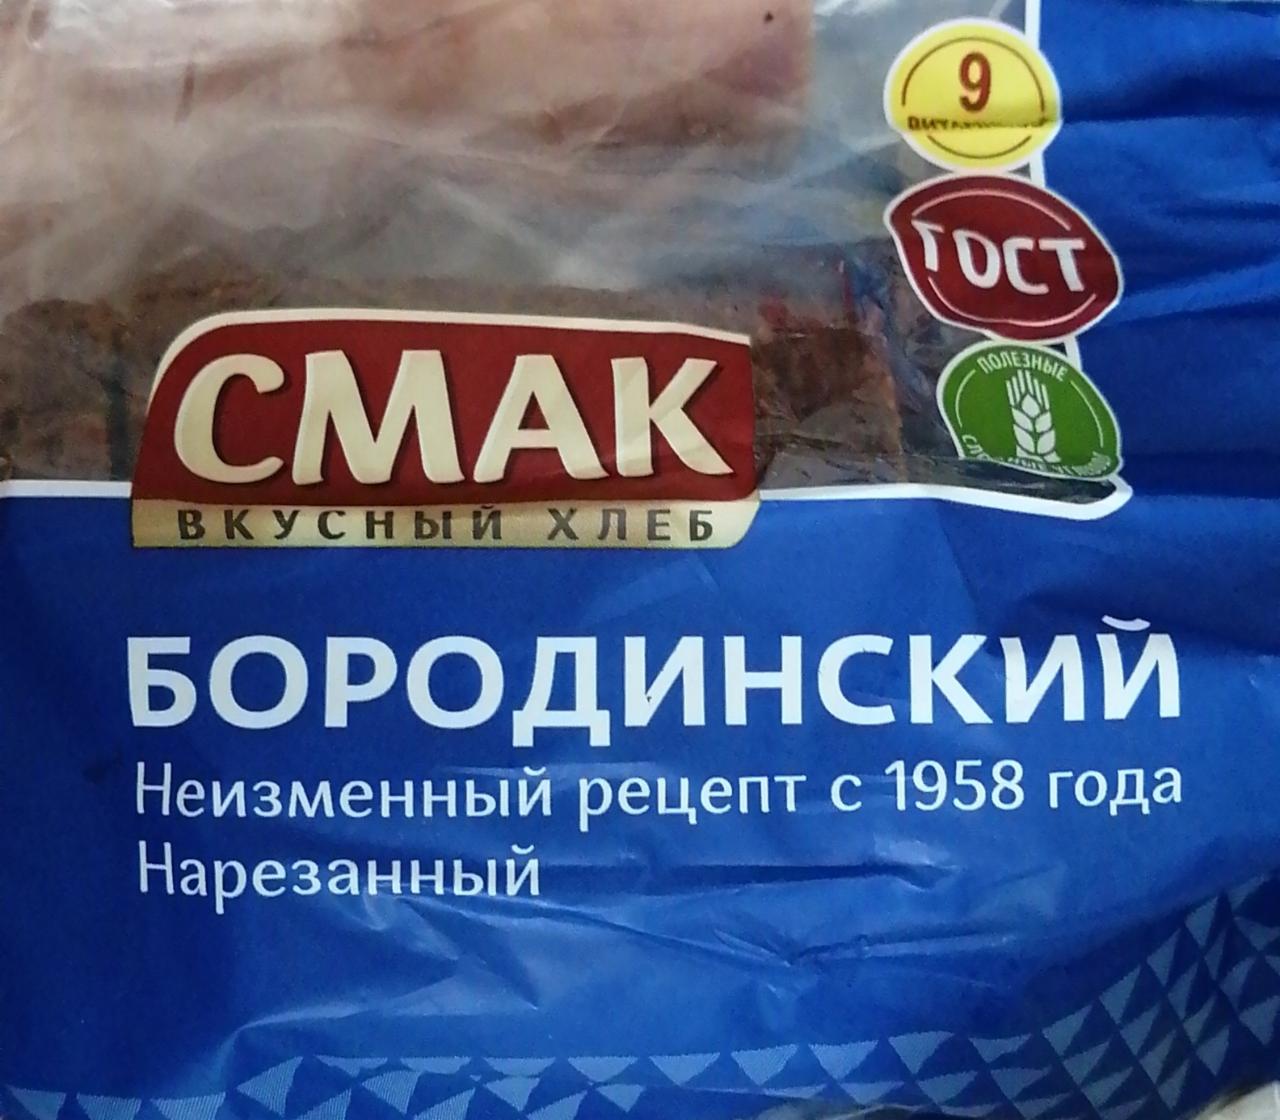 Фото - Хлеб бородинский вкусный хлеб Смак